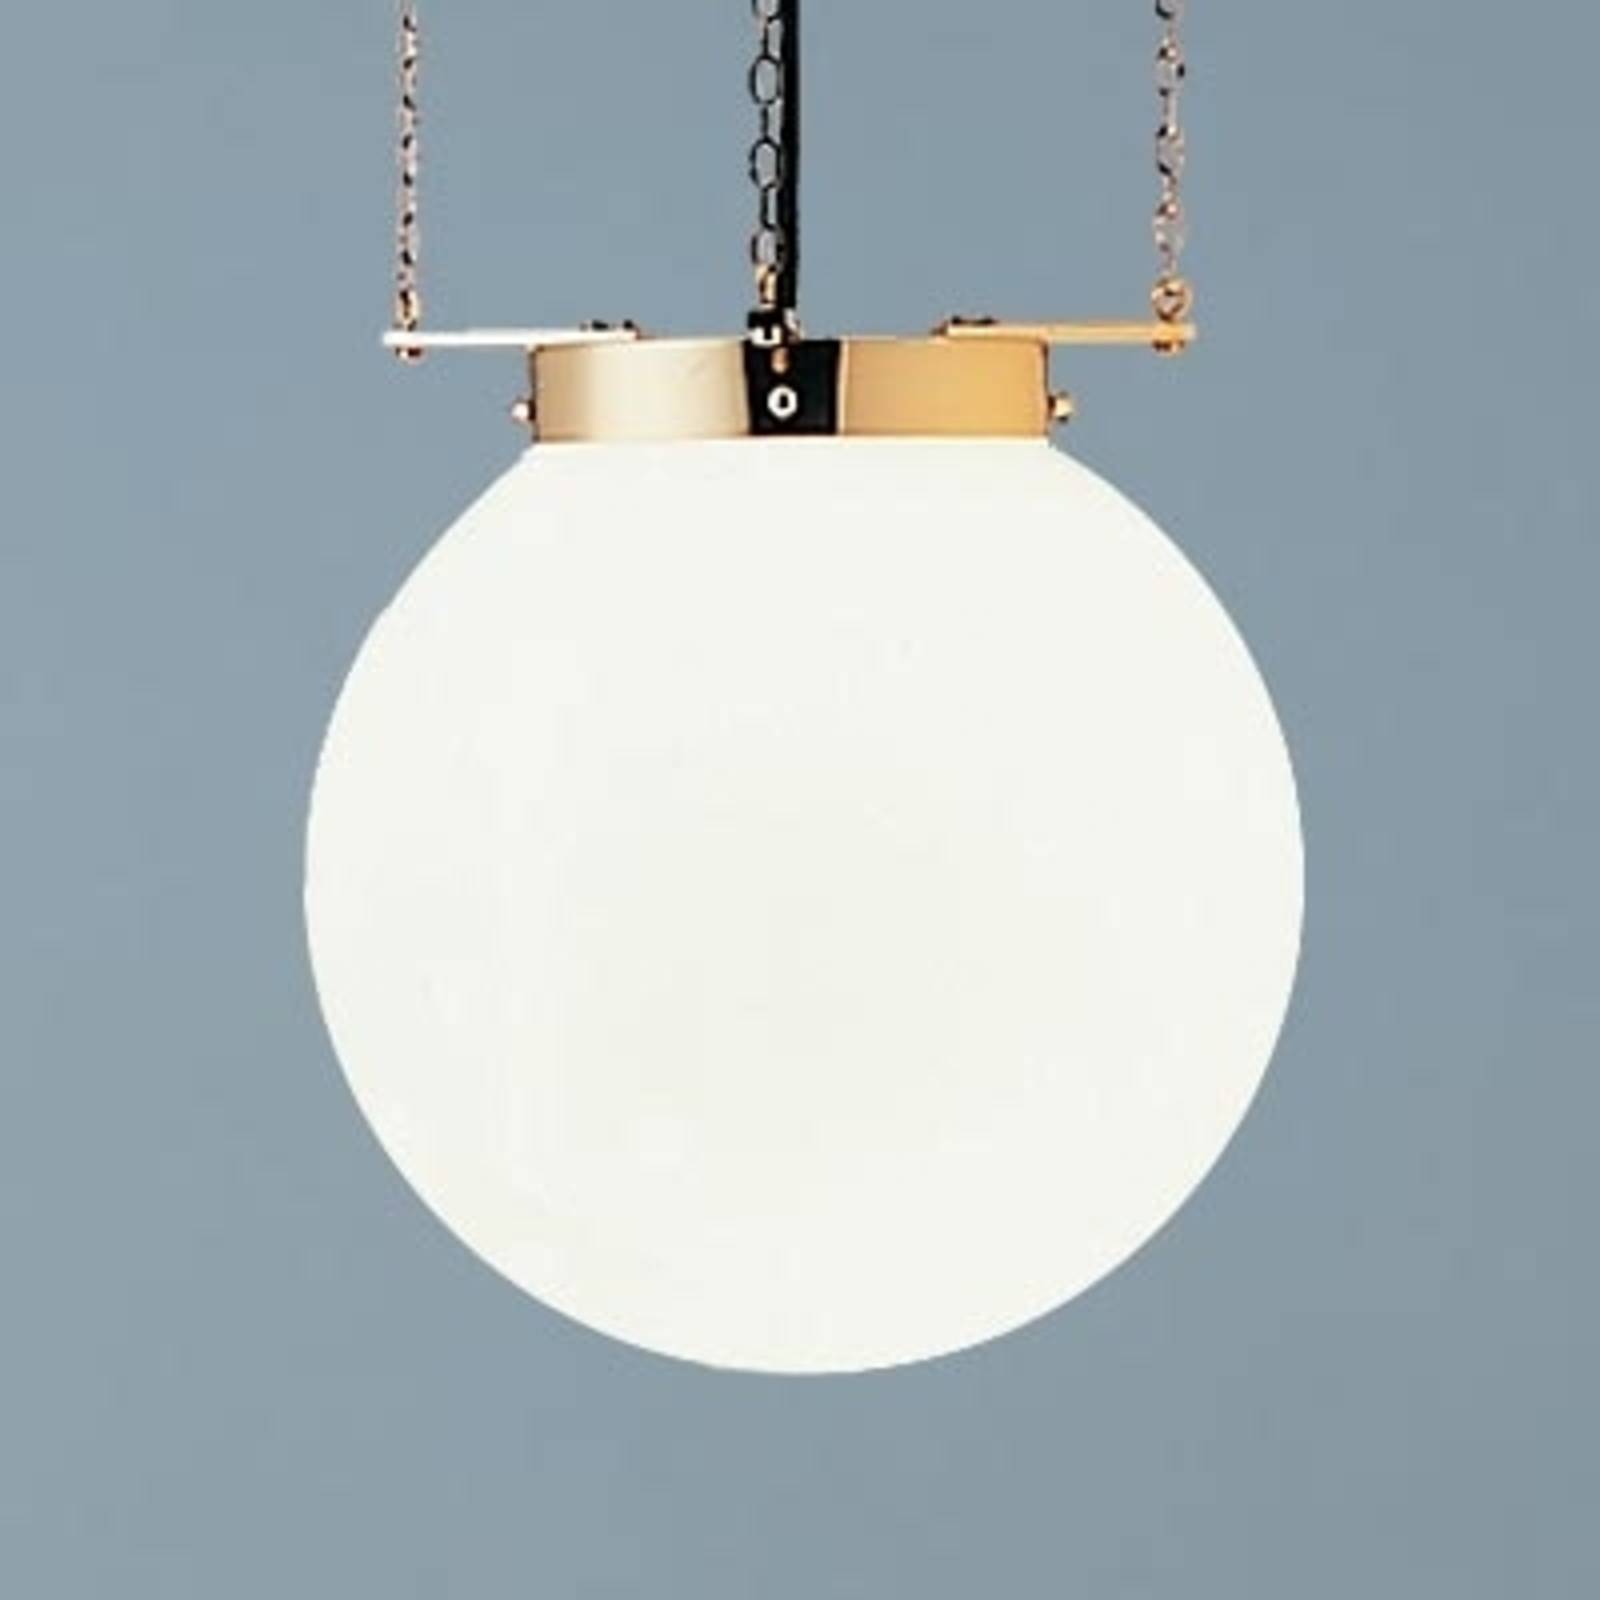 Lampa wisząca w stylu Bauhaus mosiądz 30 cm